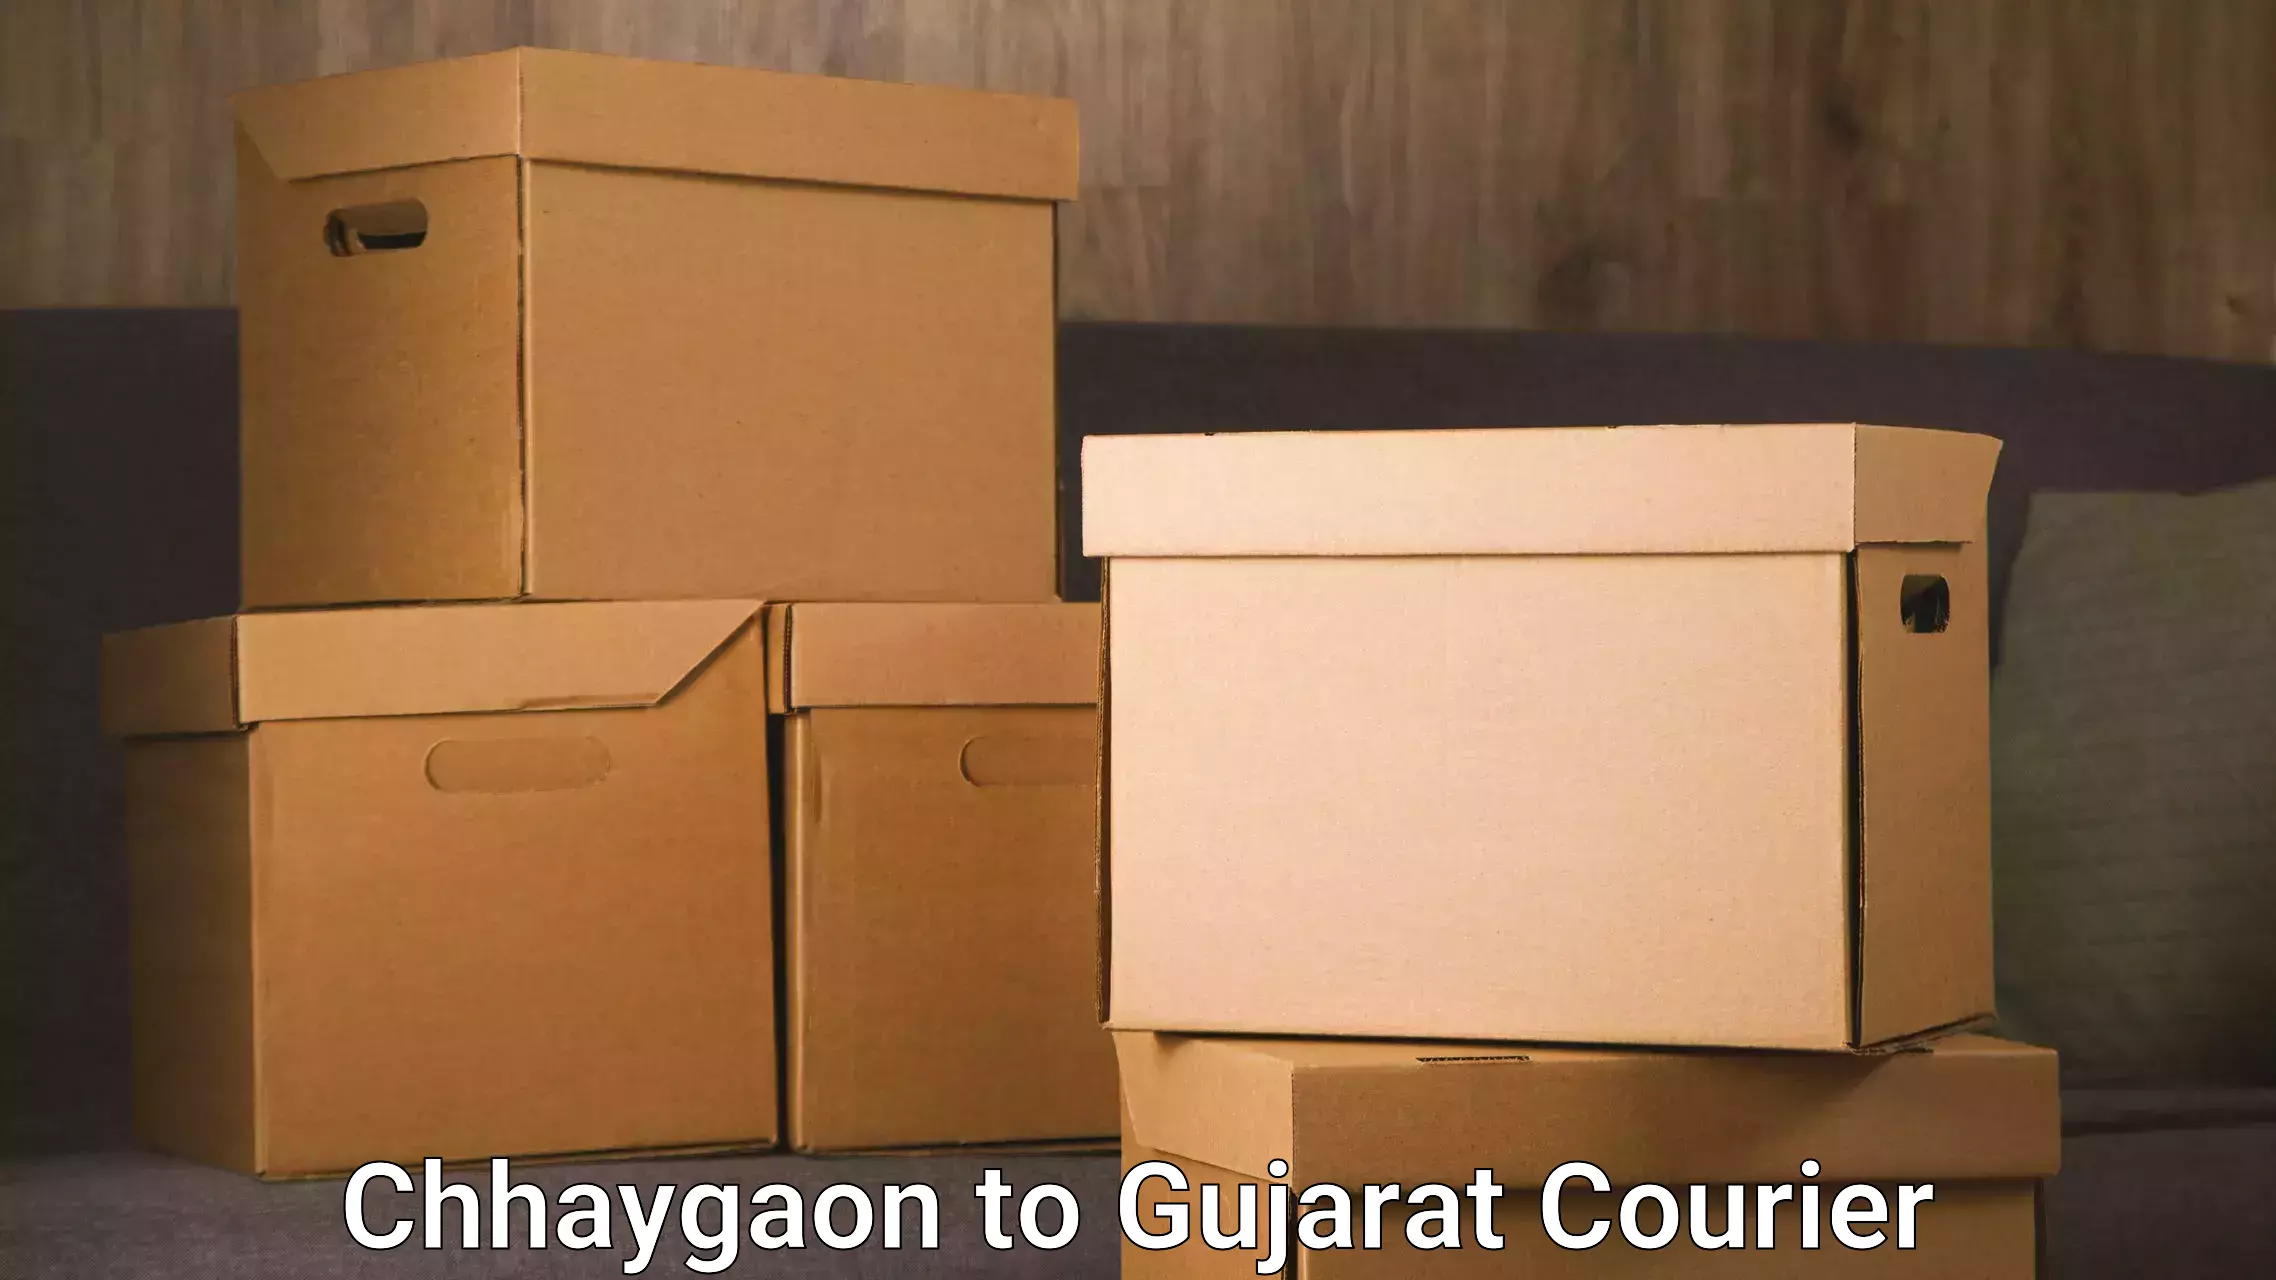 Global logistics network Chhaygaon to Dwarka